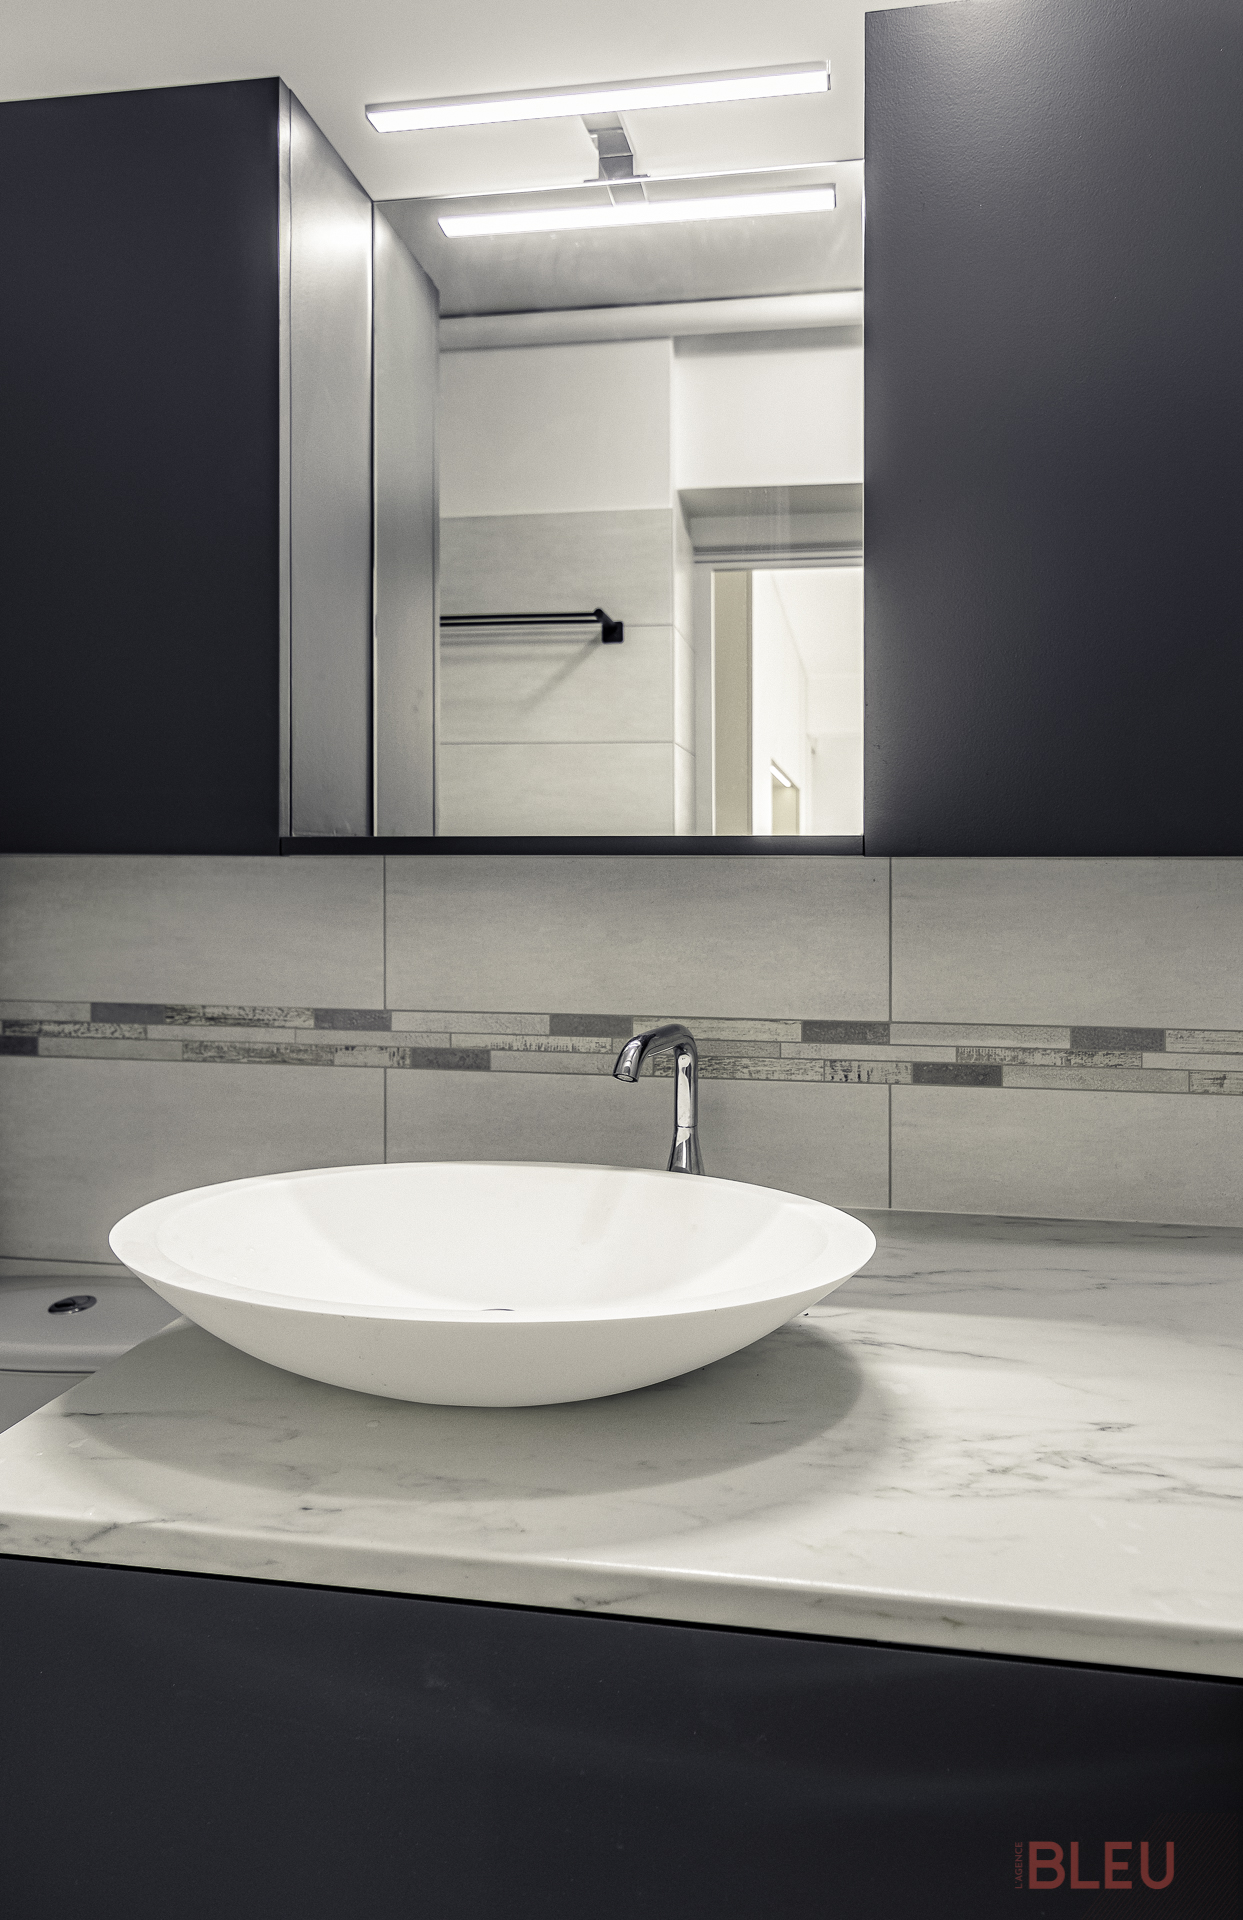 Cet agencement de salle de bain offre une utilisation optimale de l'espace. Le meuble vasque propose du rangement pour les articles de grande taille et un espace pour un lave-linge. Au-dessus, une tablette, un miroir, une applique et des meubles de rangement pour les objets plus petits. À gauche se trouve un cabinet de toilette traditionnel.